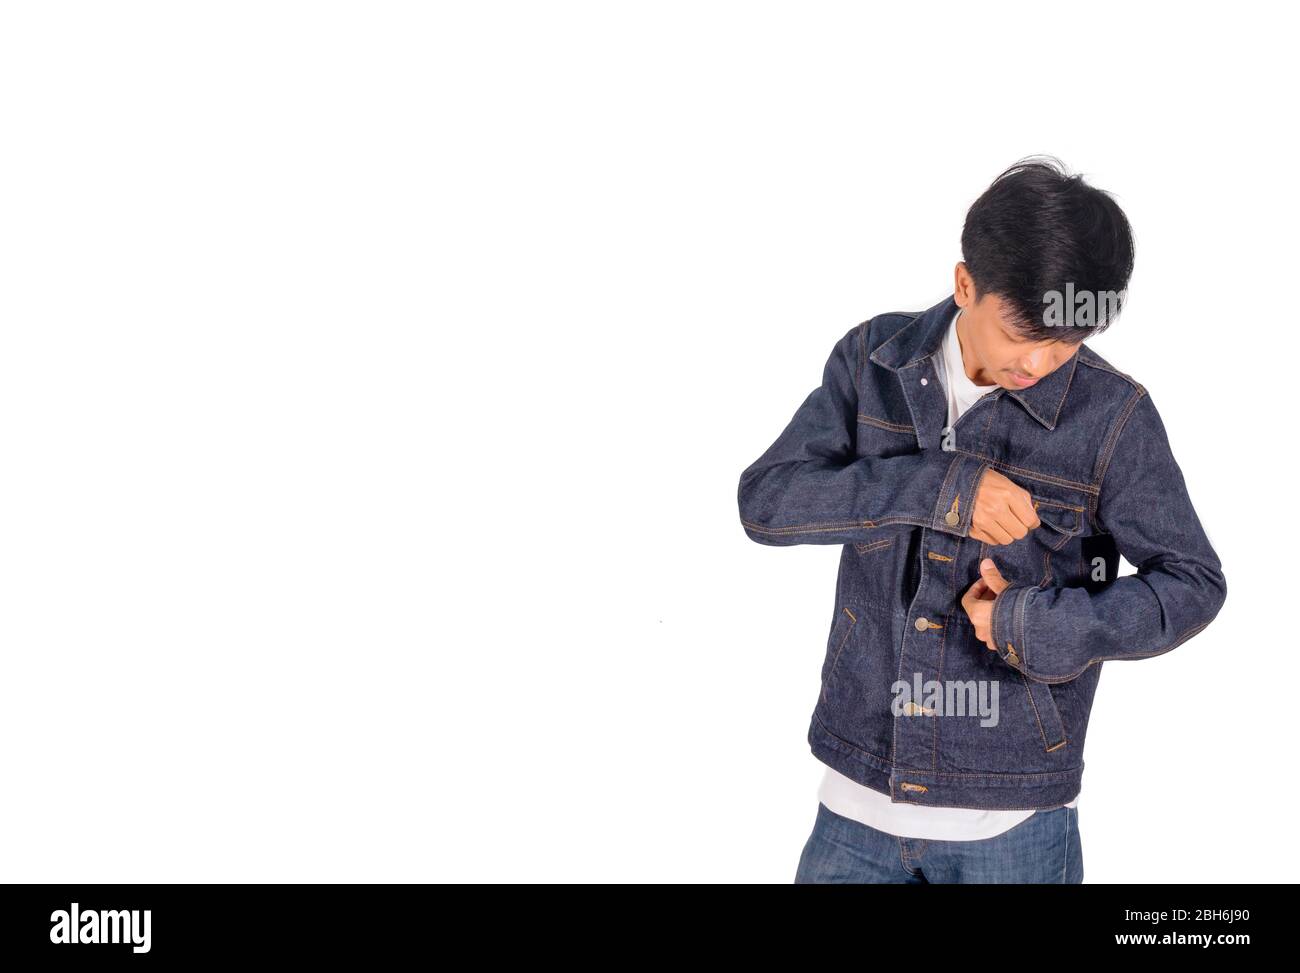 Un garçon asiatique met sur un fond blanc de veste de Jean trop grande. Banque D'Images